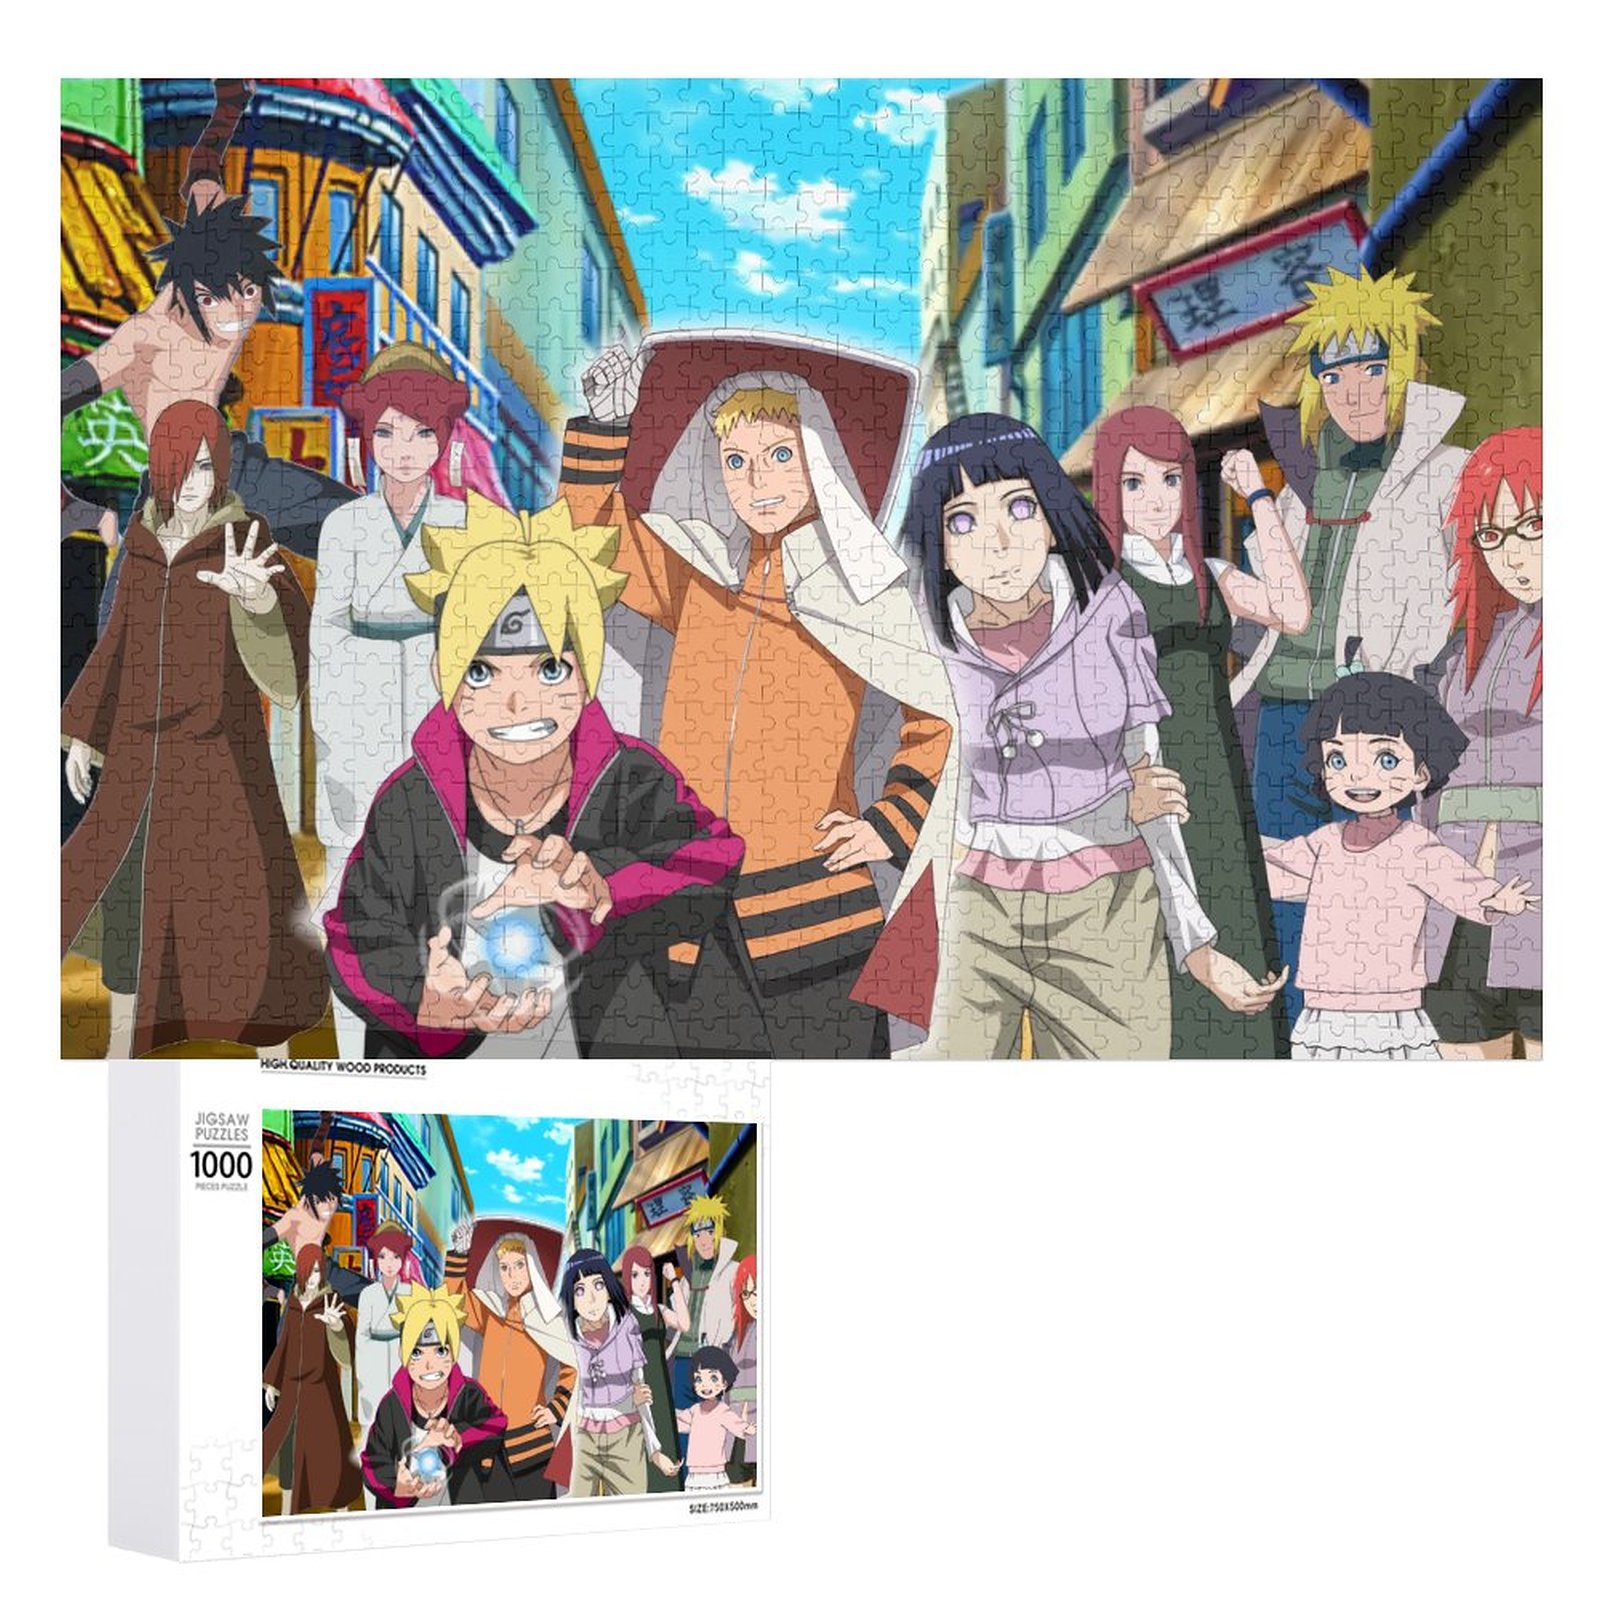 Naruto Hinata Jigsaw Puzzle